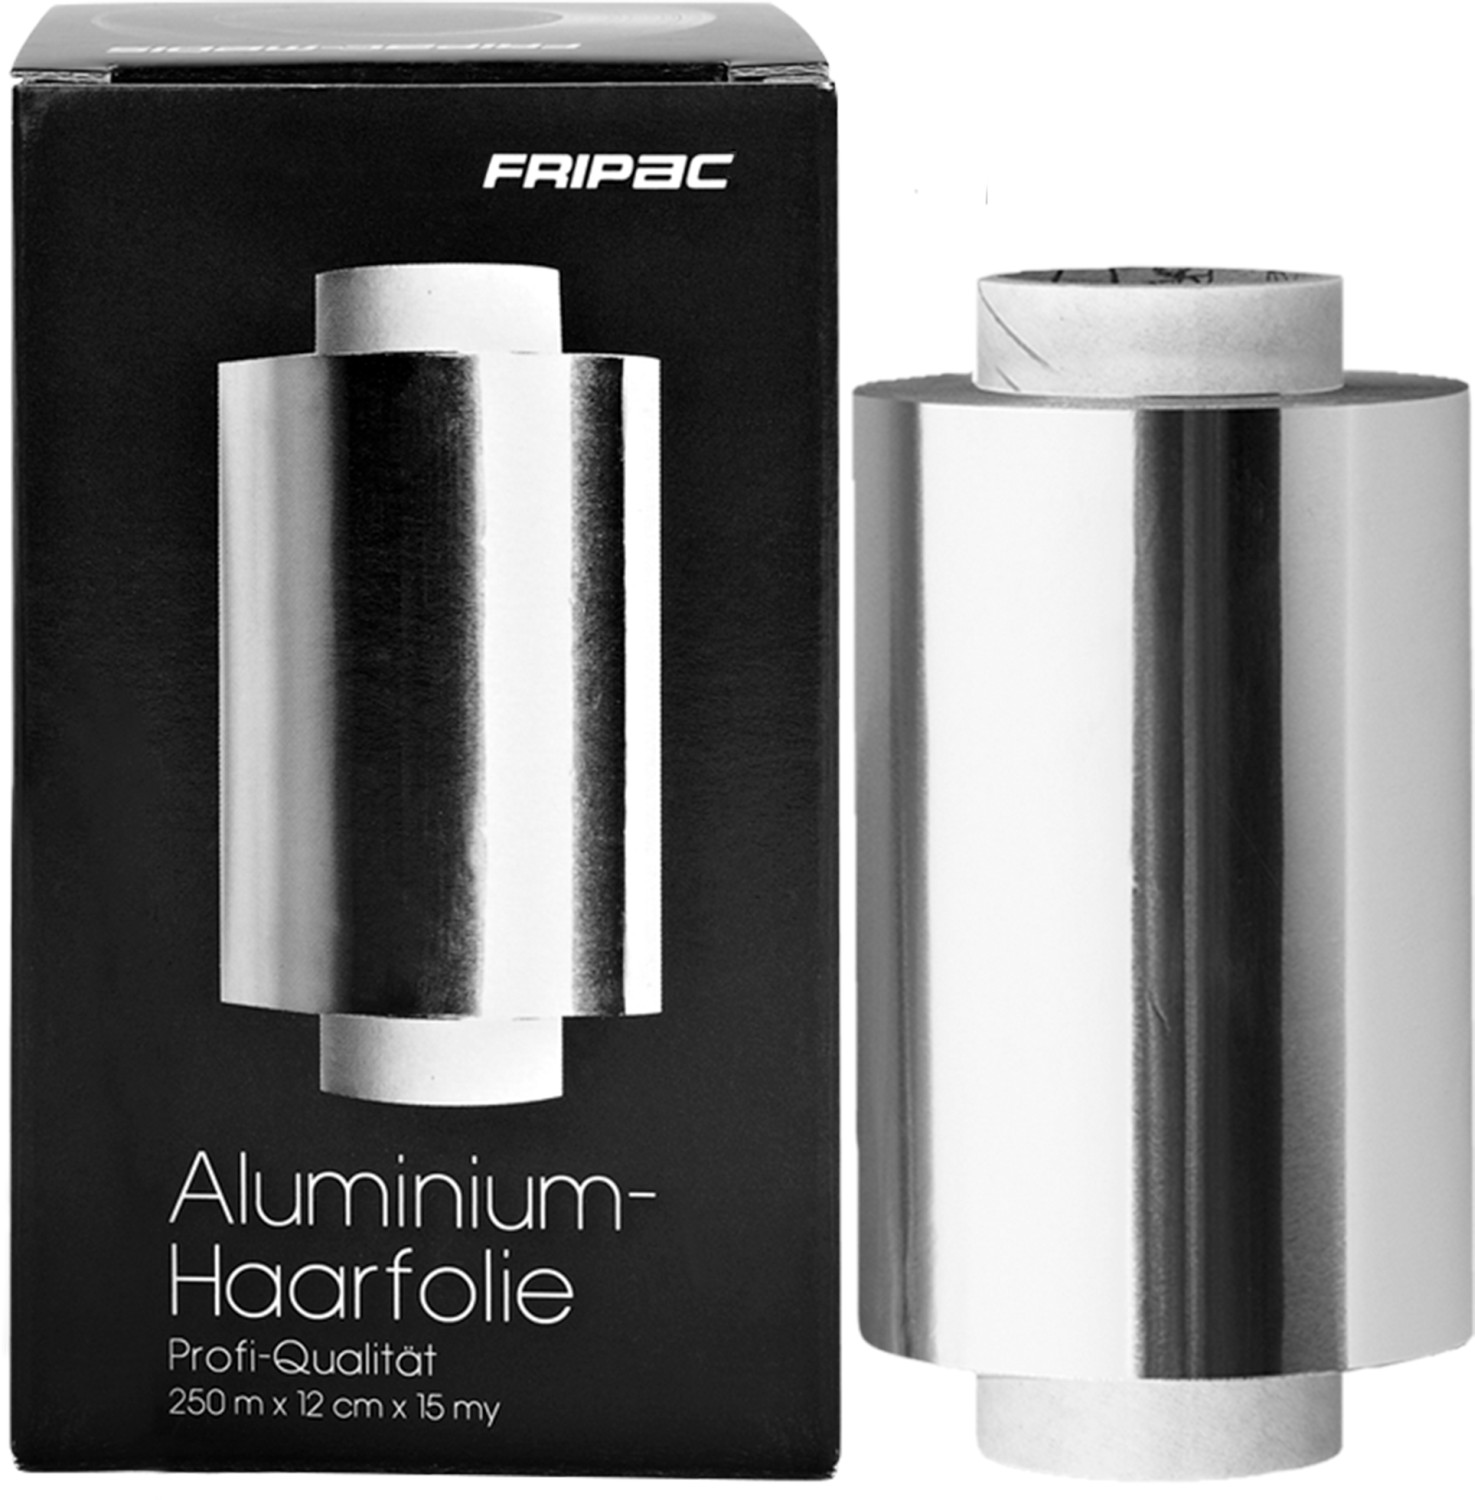  Fripac-Medis Aluminium-Foil 250 m x 12 cm, 15 my 